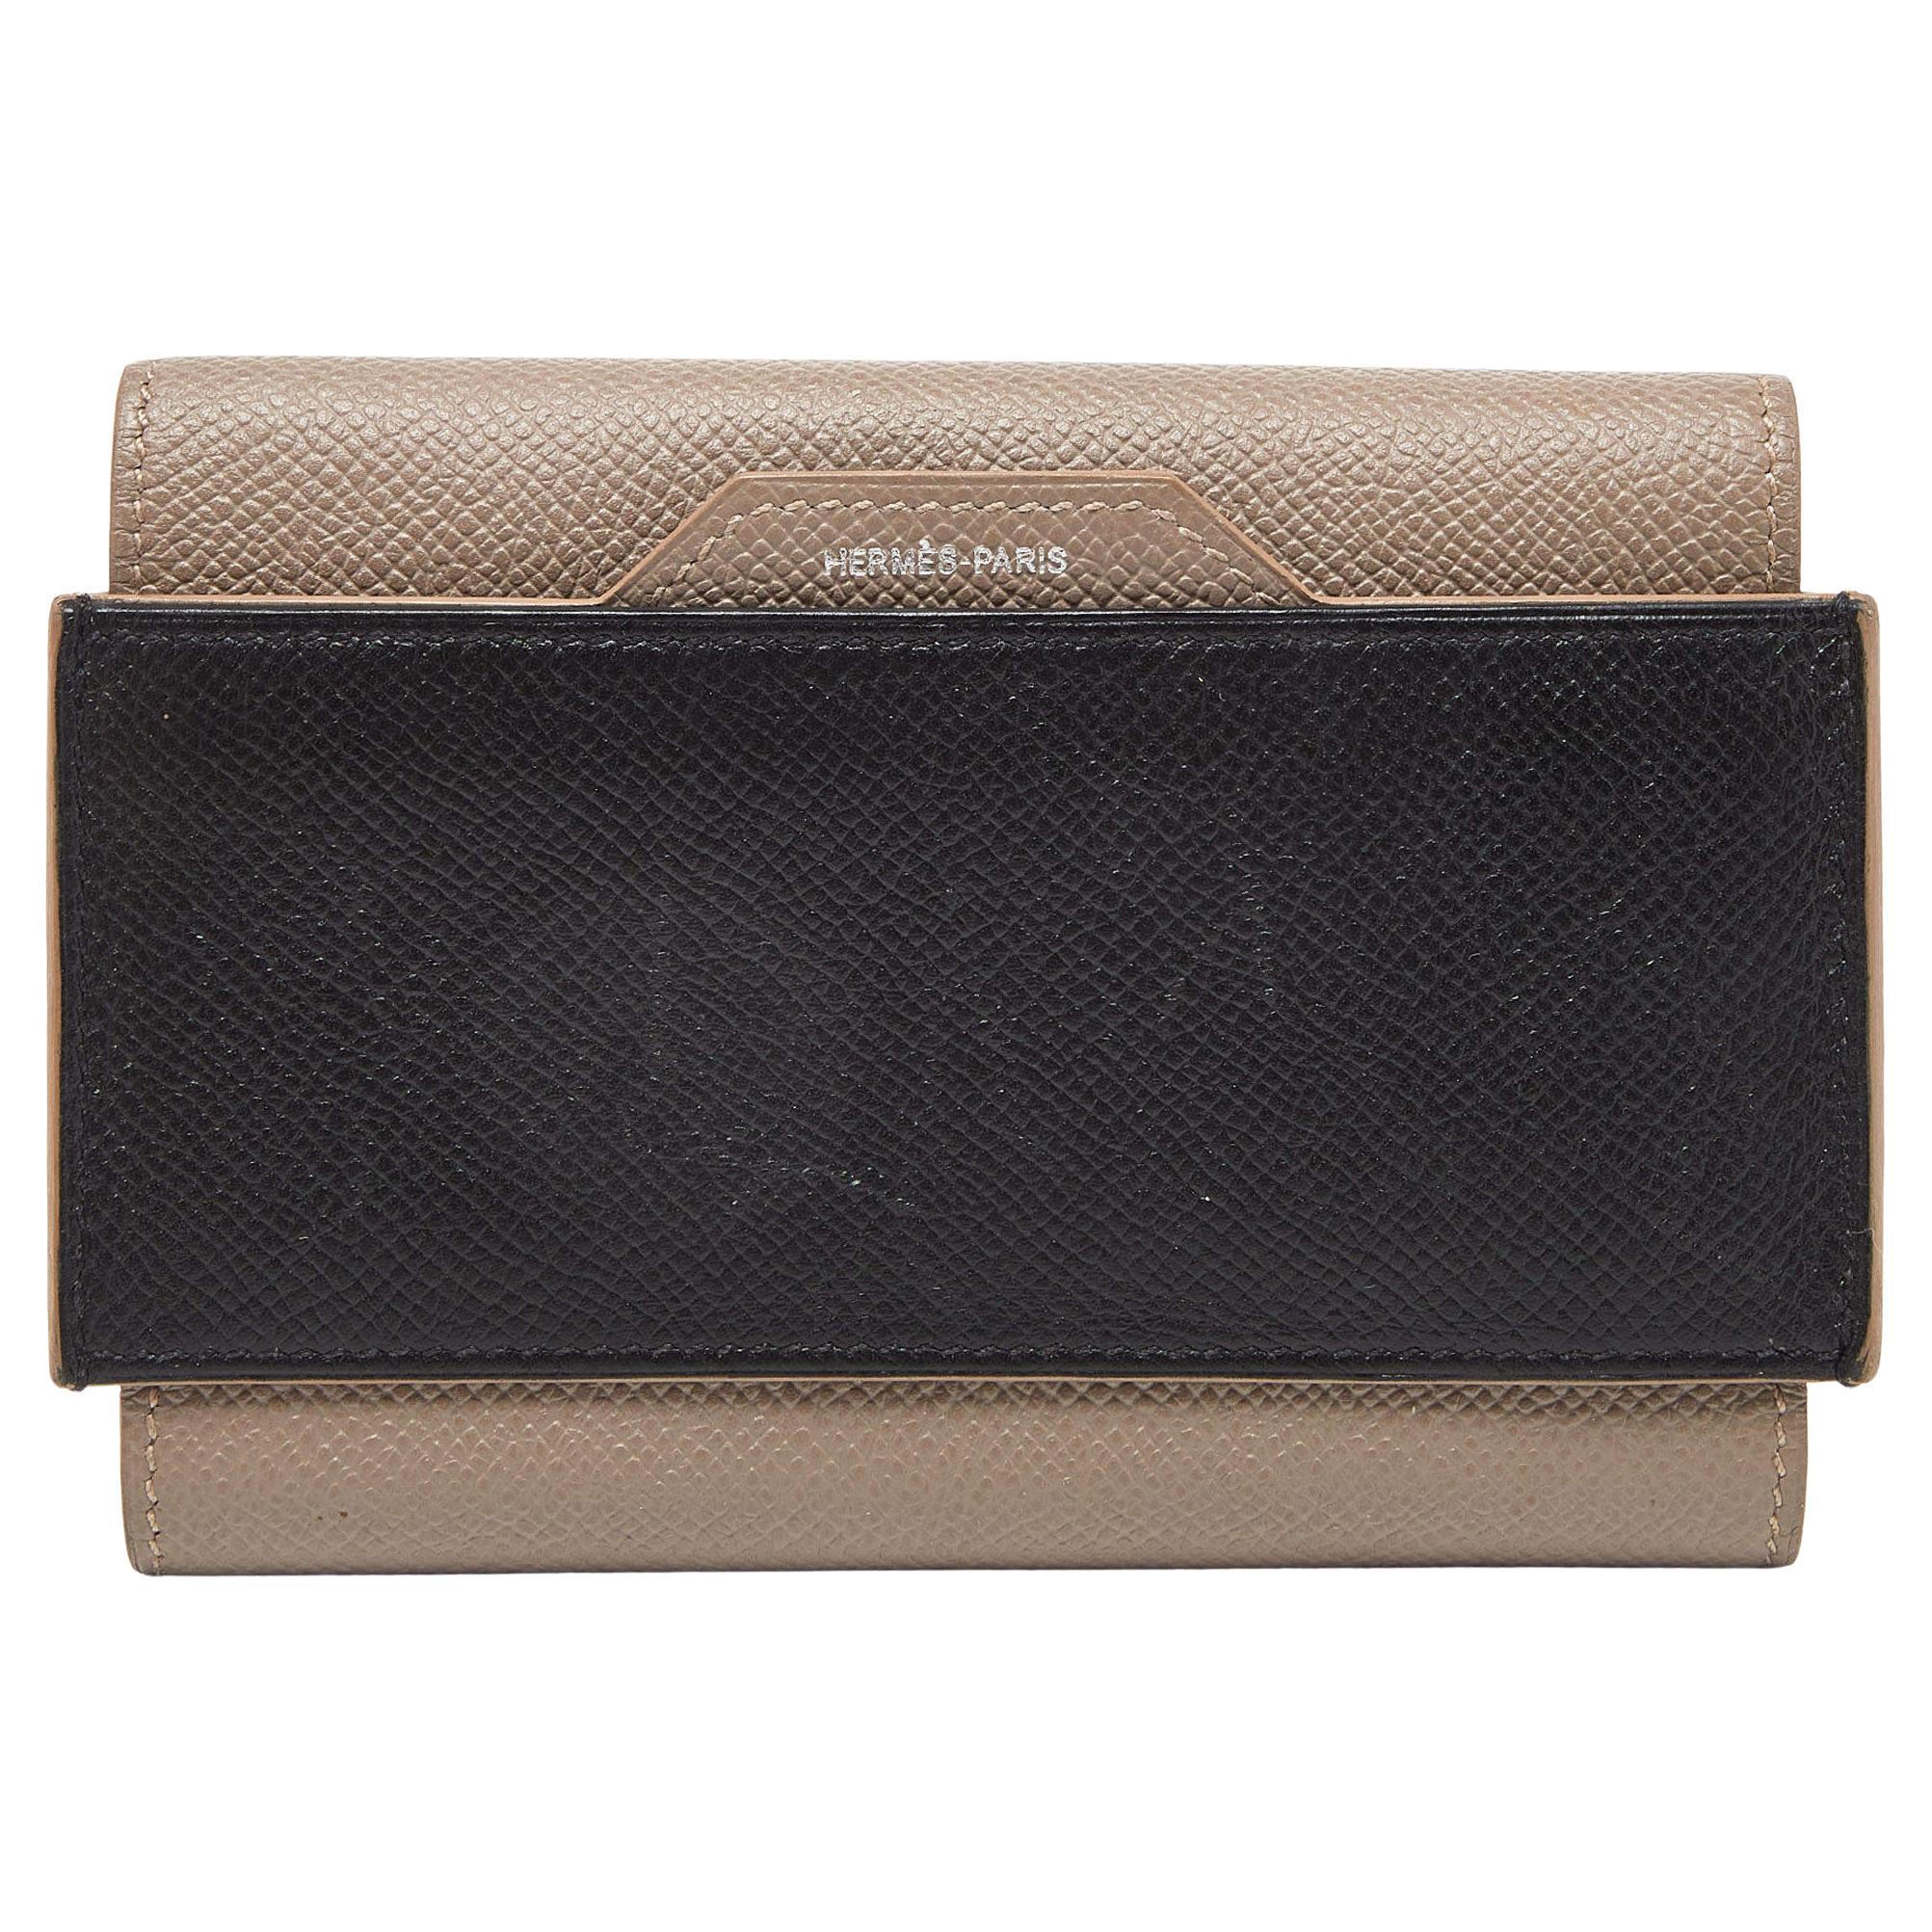 Hermès Etain/Black Epsom Leather Passant Compact Wallet For Sale